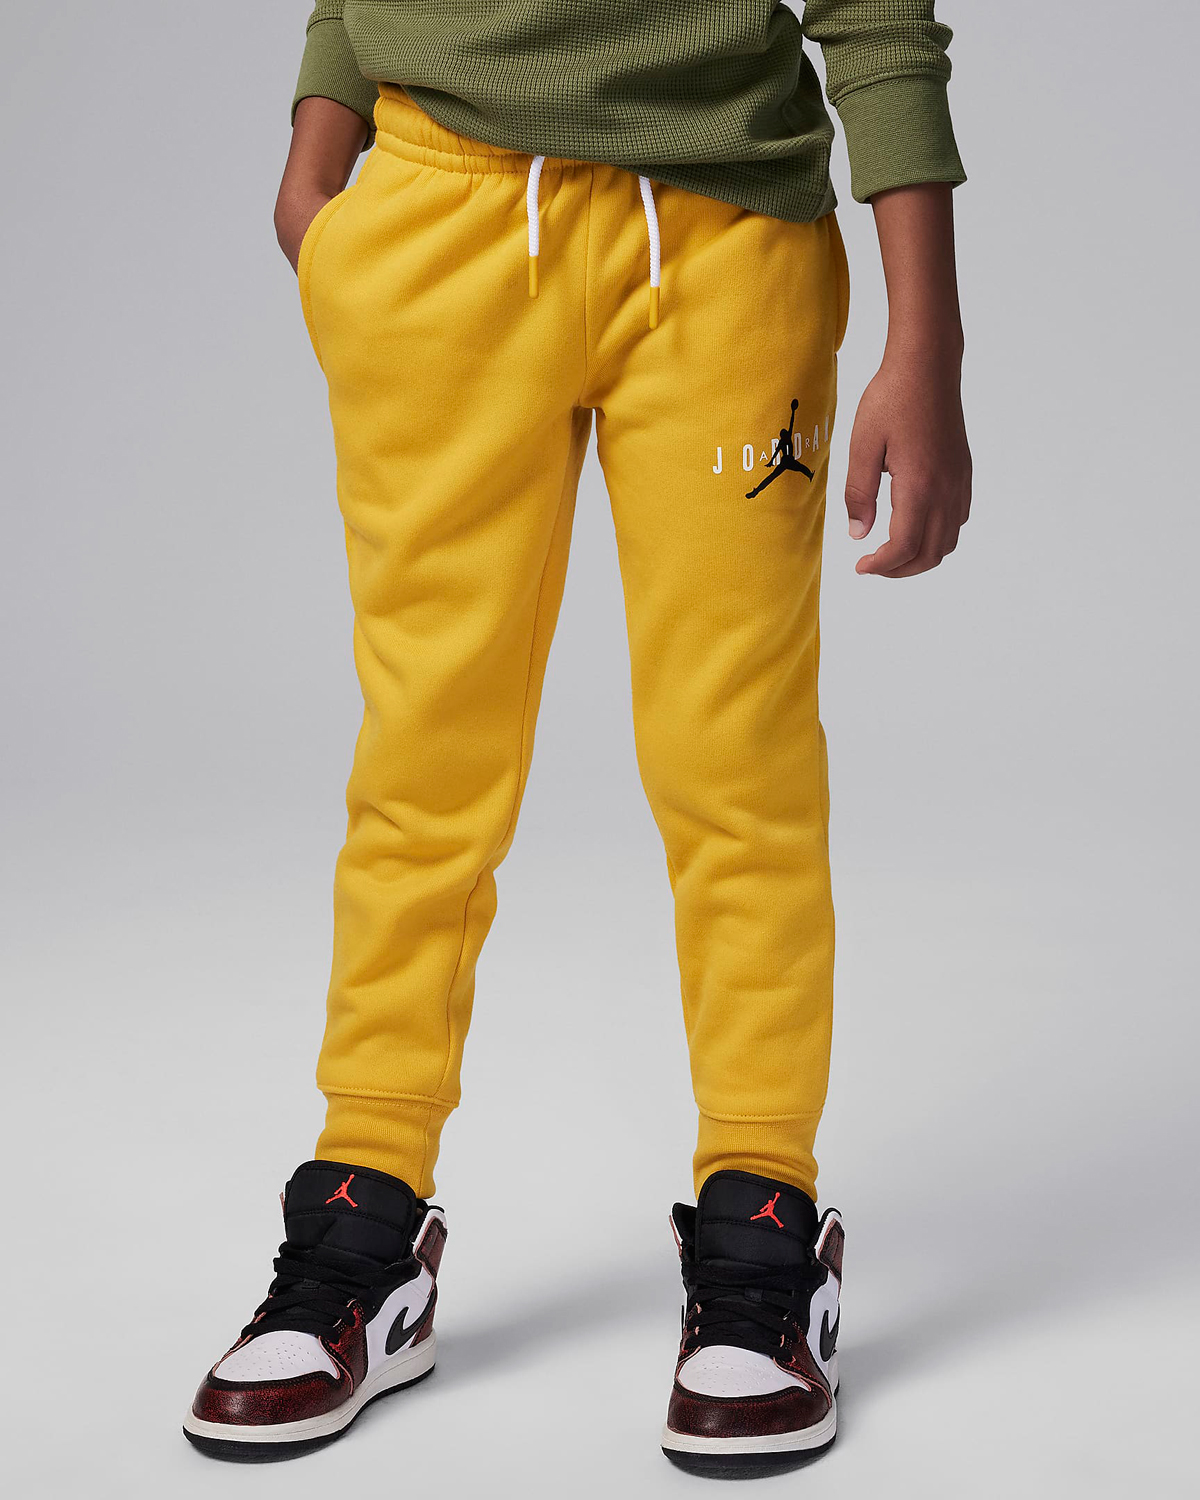 Jordan-Little-Kids-Fleece-Pants-Yellow-Ochre-Preschool